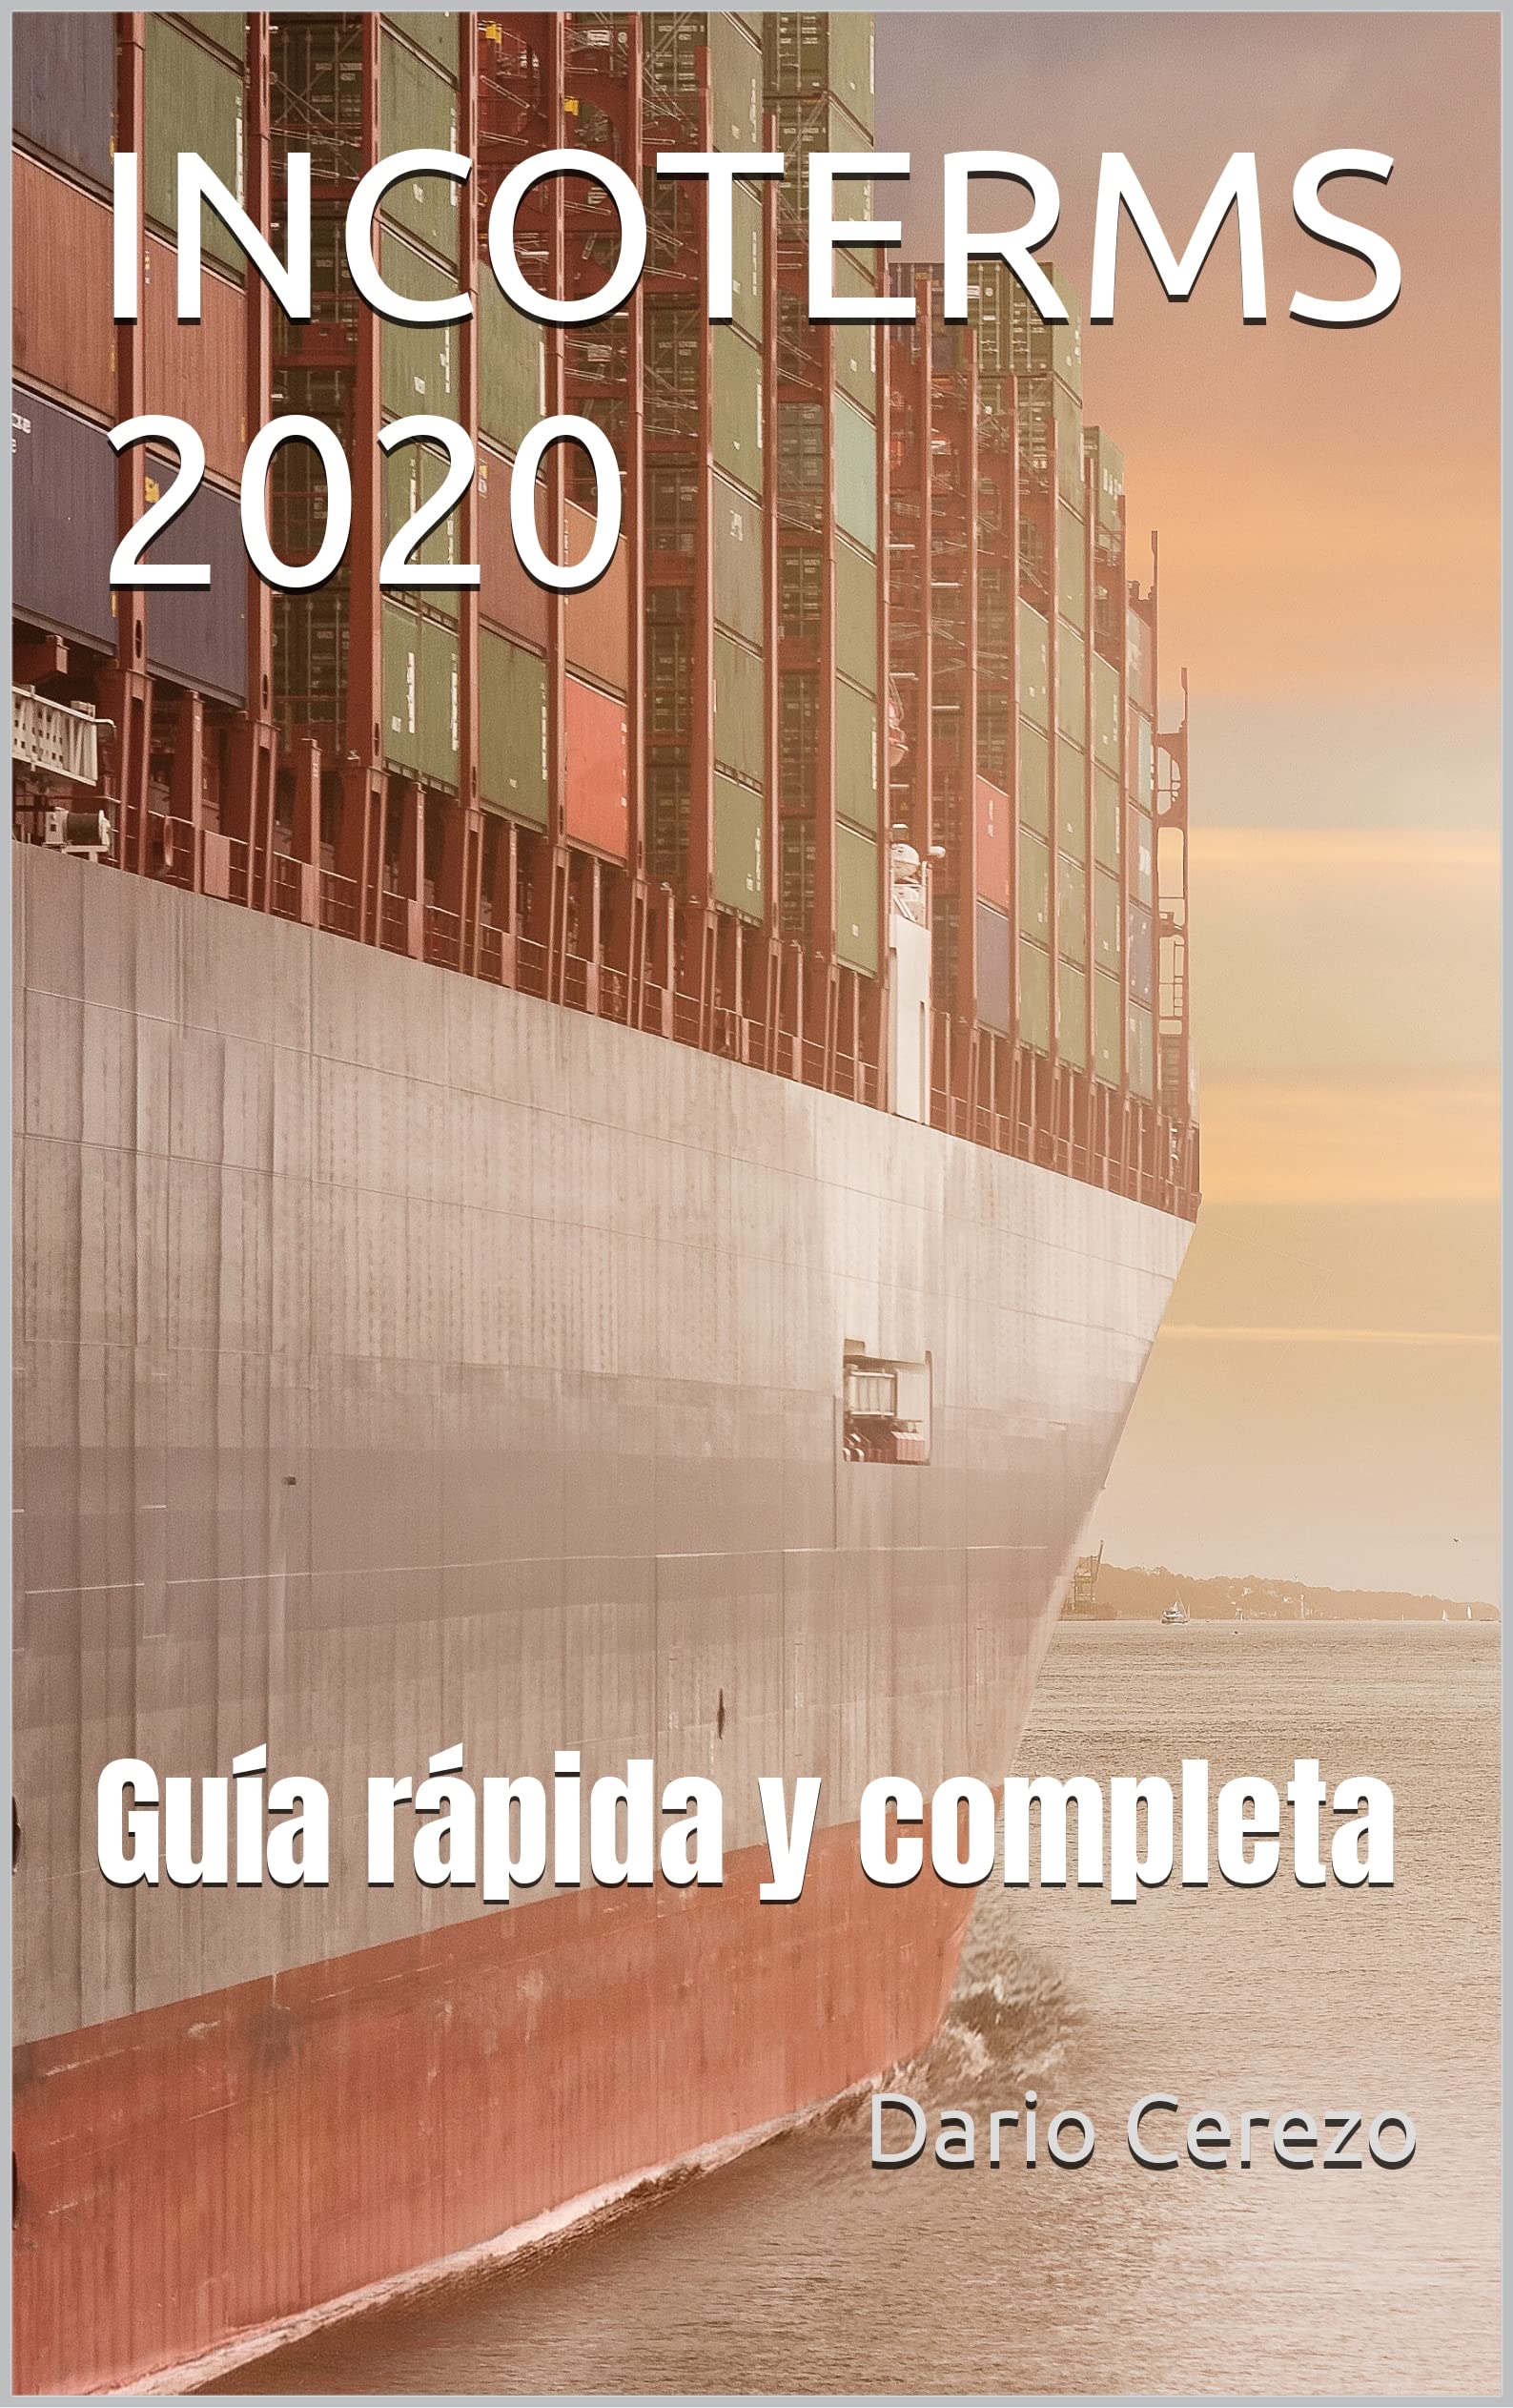 INCOTERMS 2020: Guía rápida y completa (Spanish Edition)